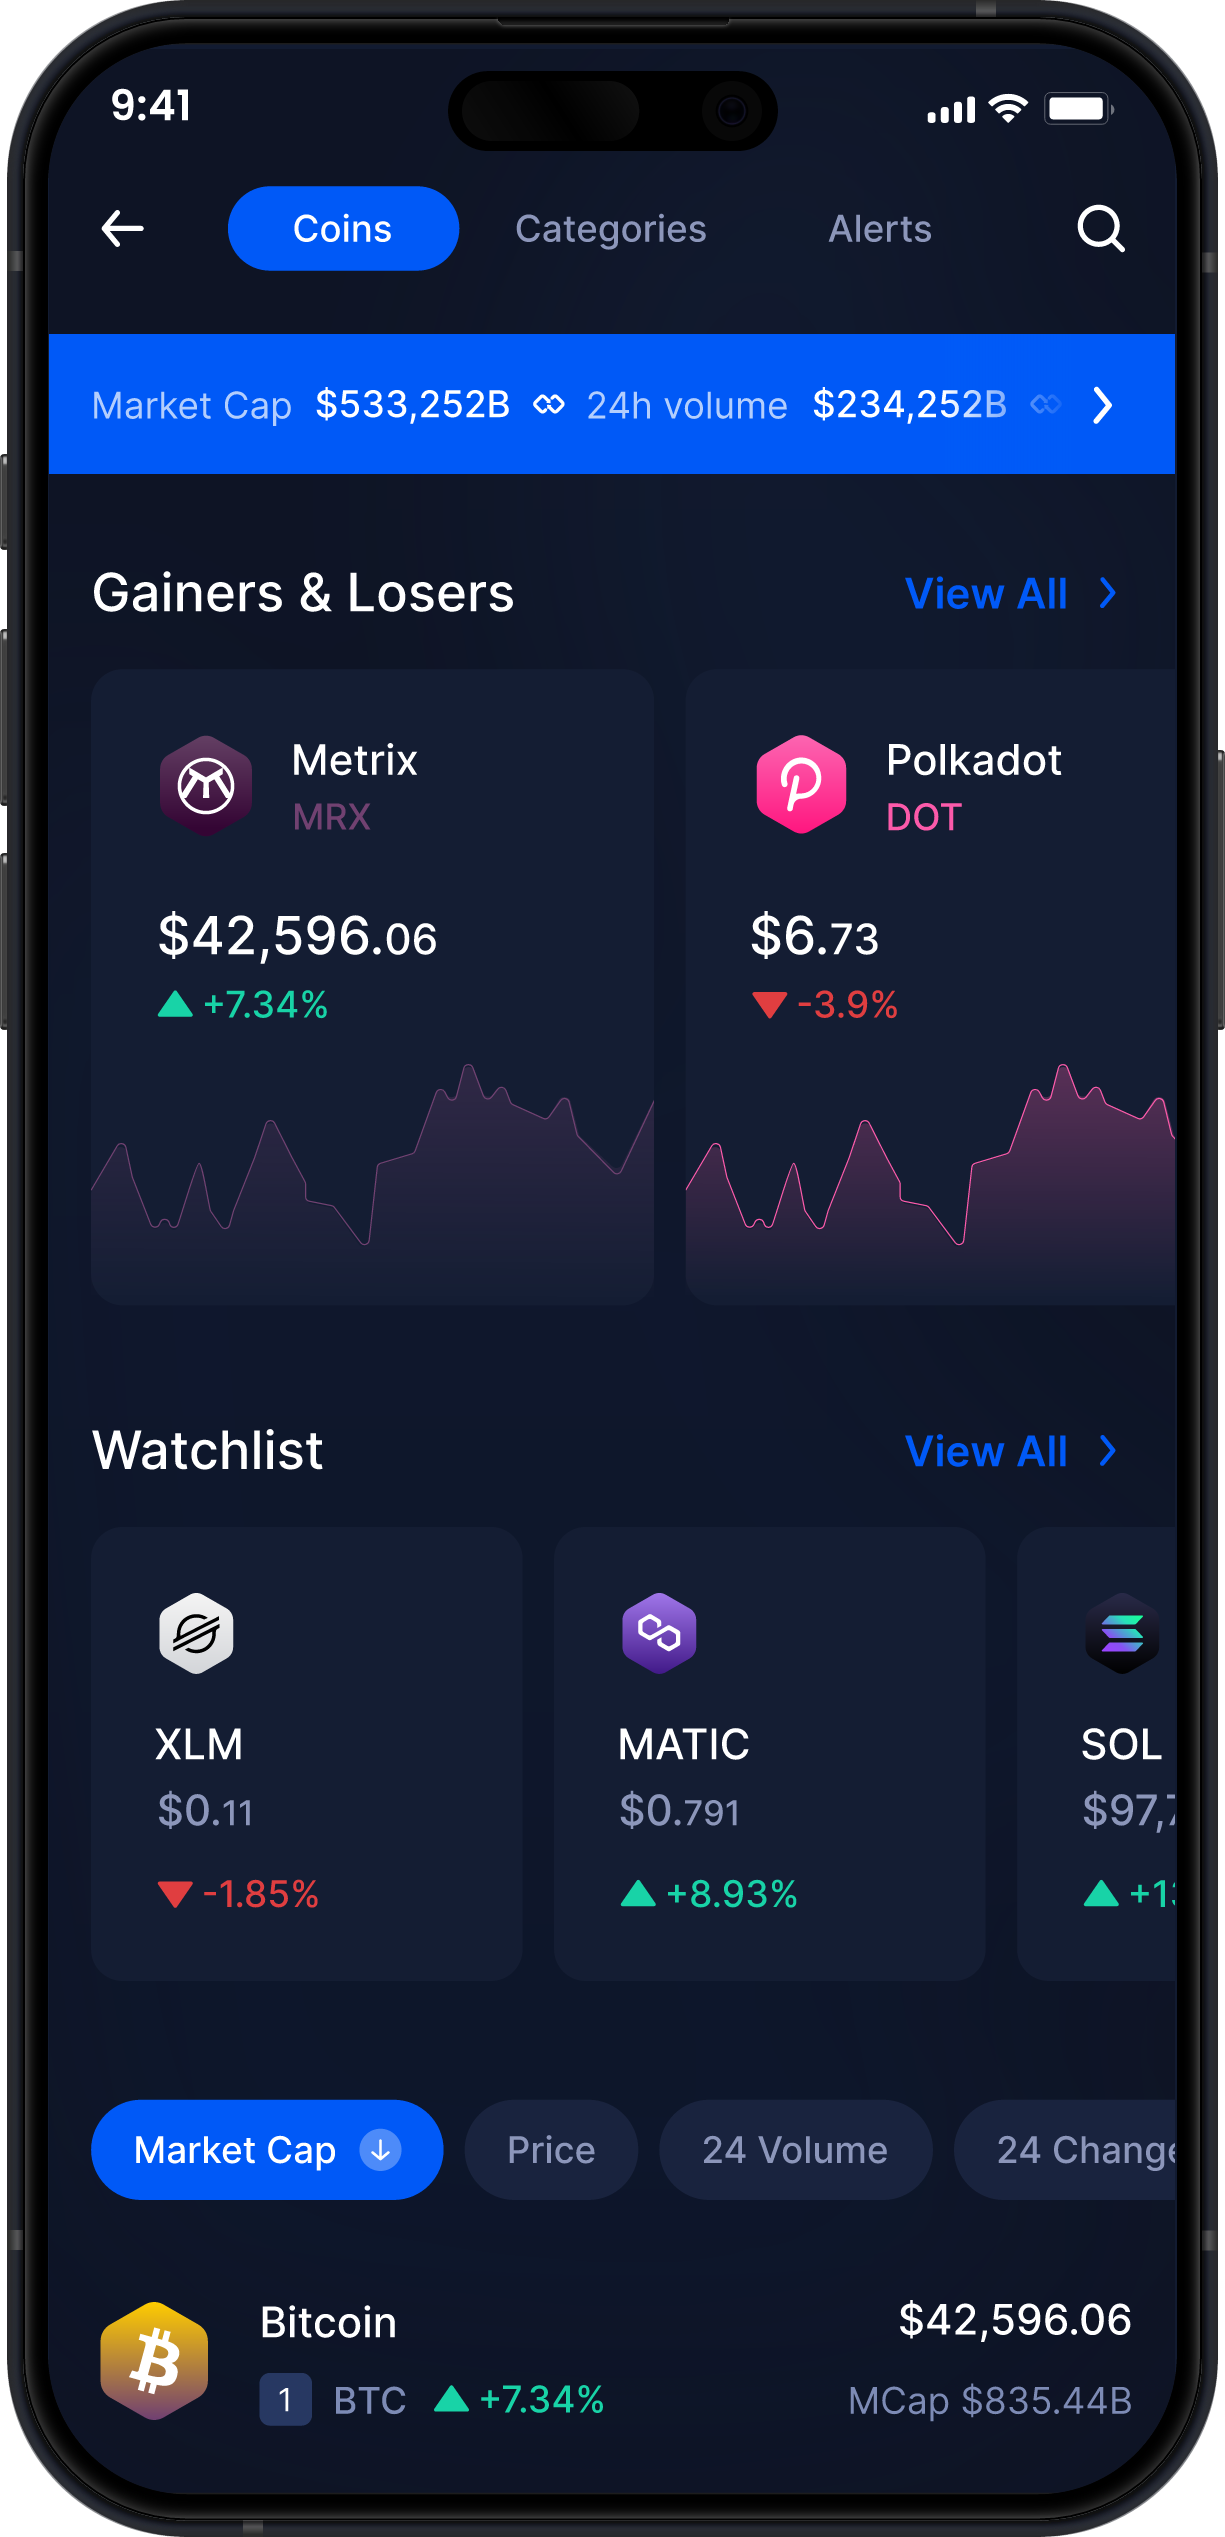 Infinity Mobile Metrix Wallet - Statistiche e Monitoraggio MRX